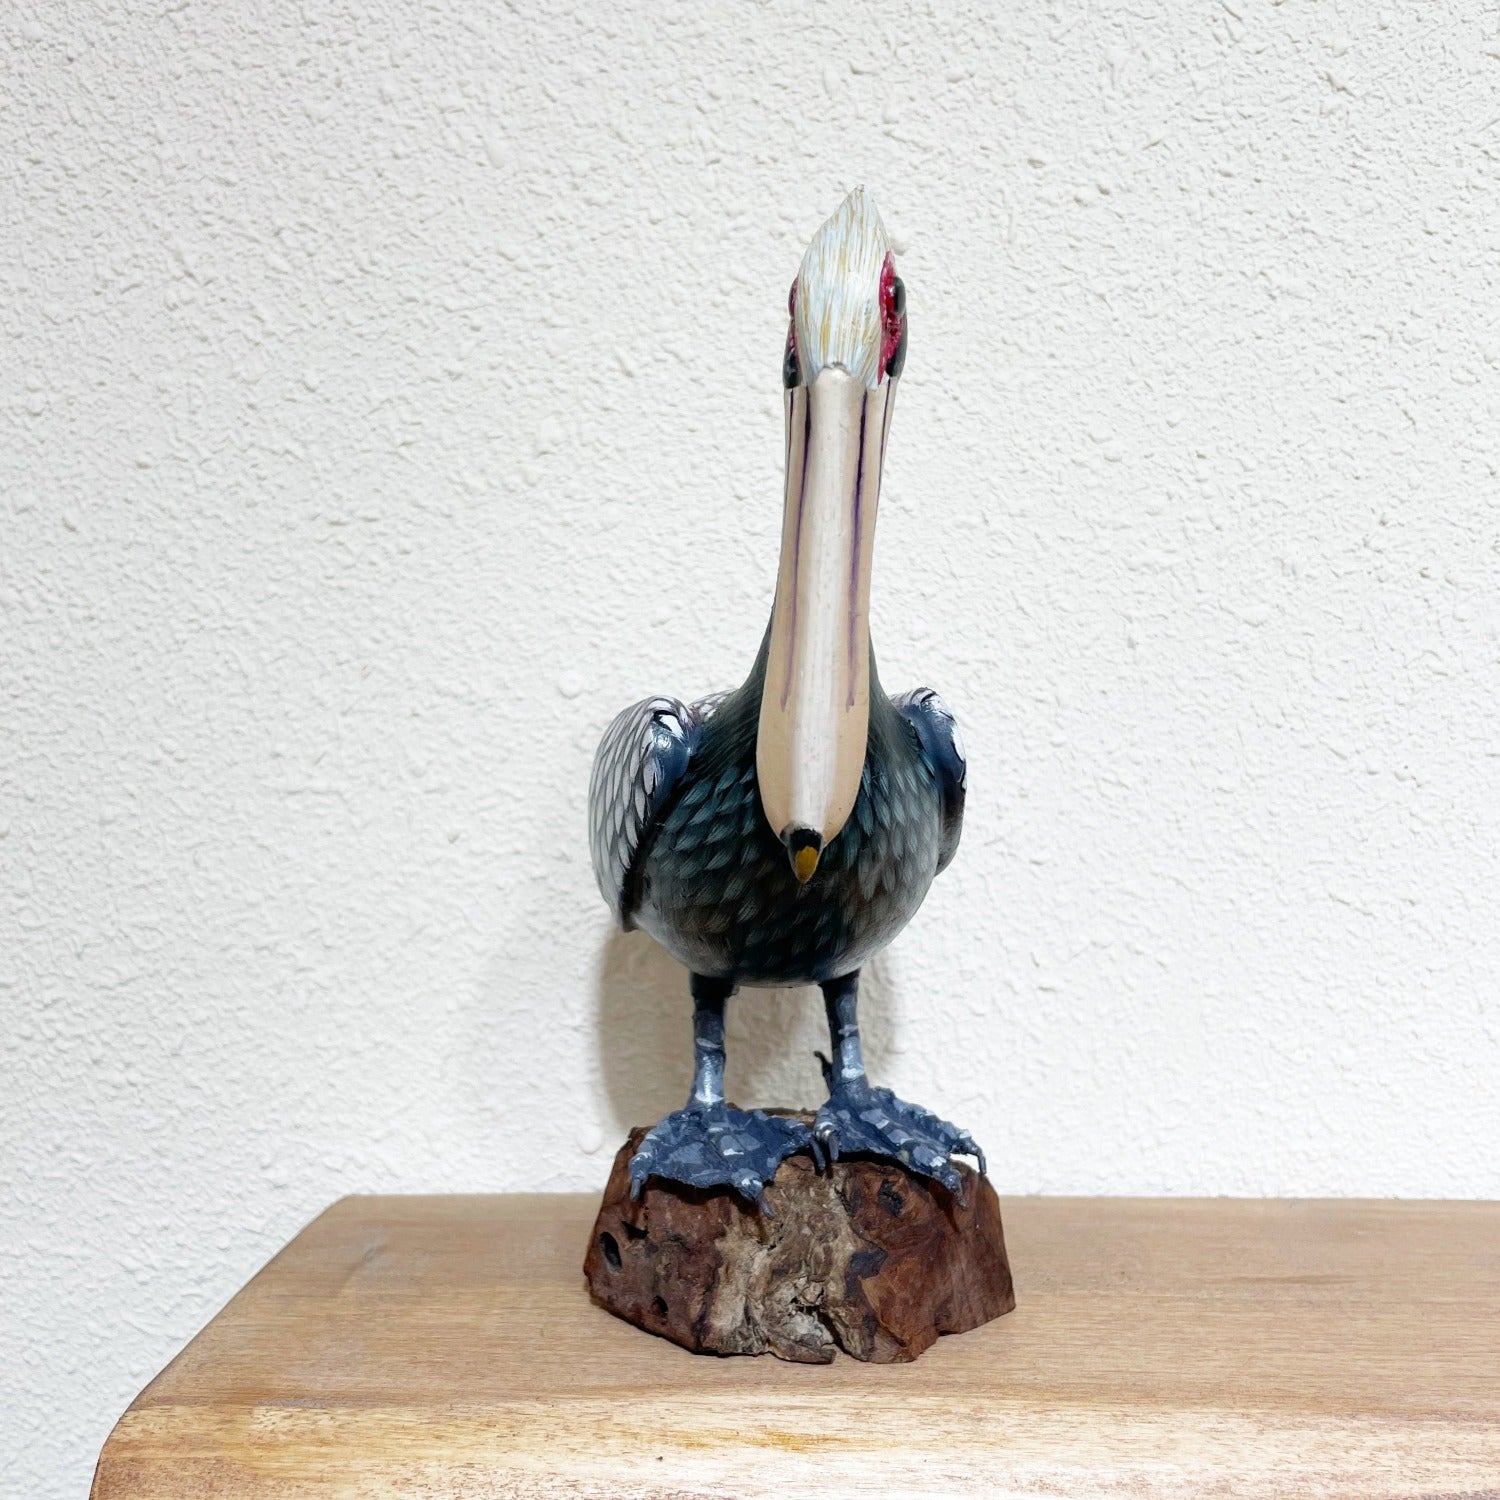 Painted Wooden Grey Pelican